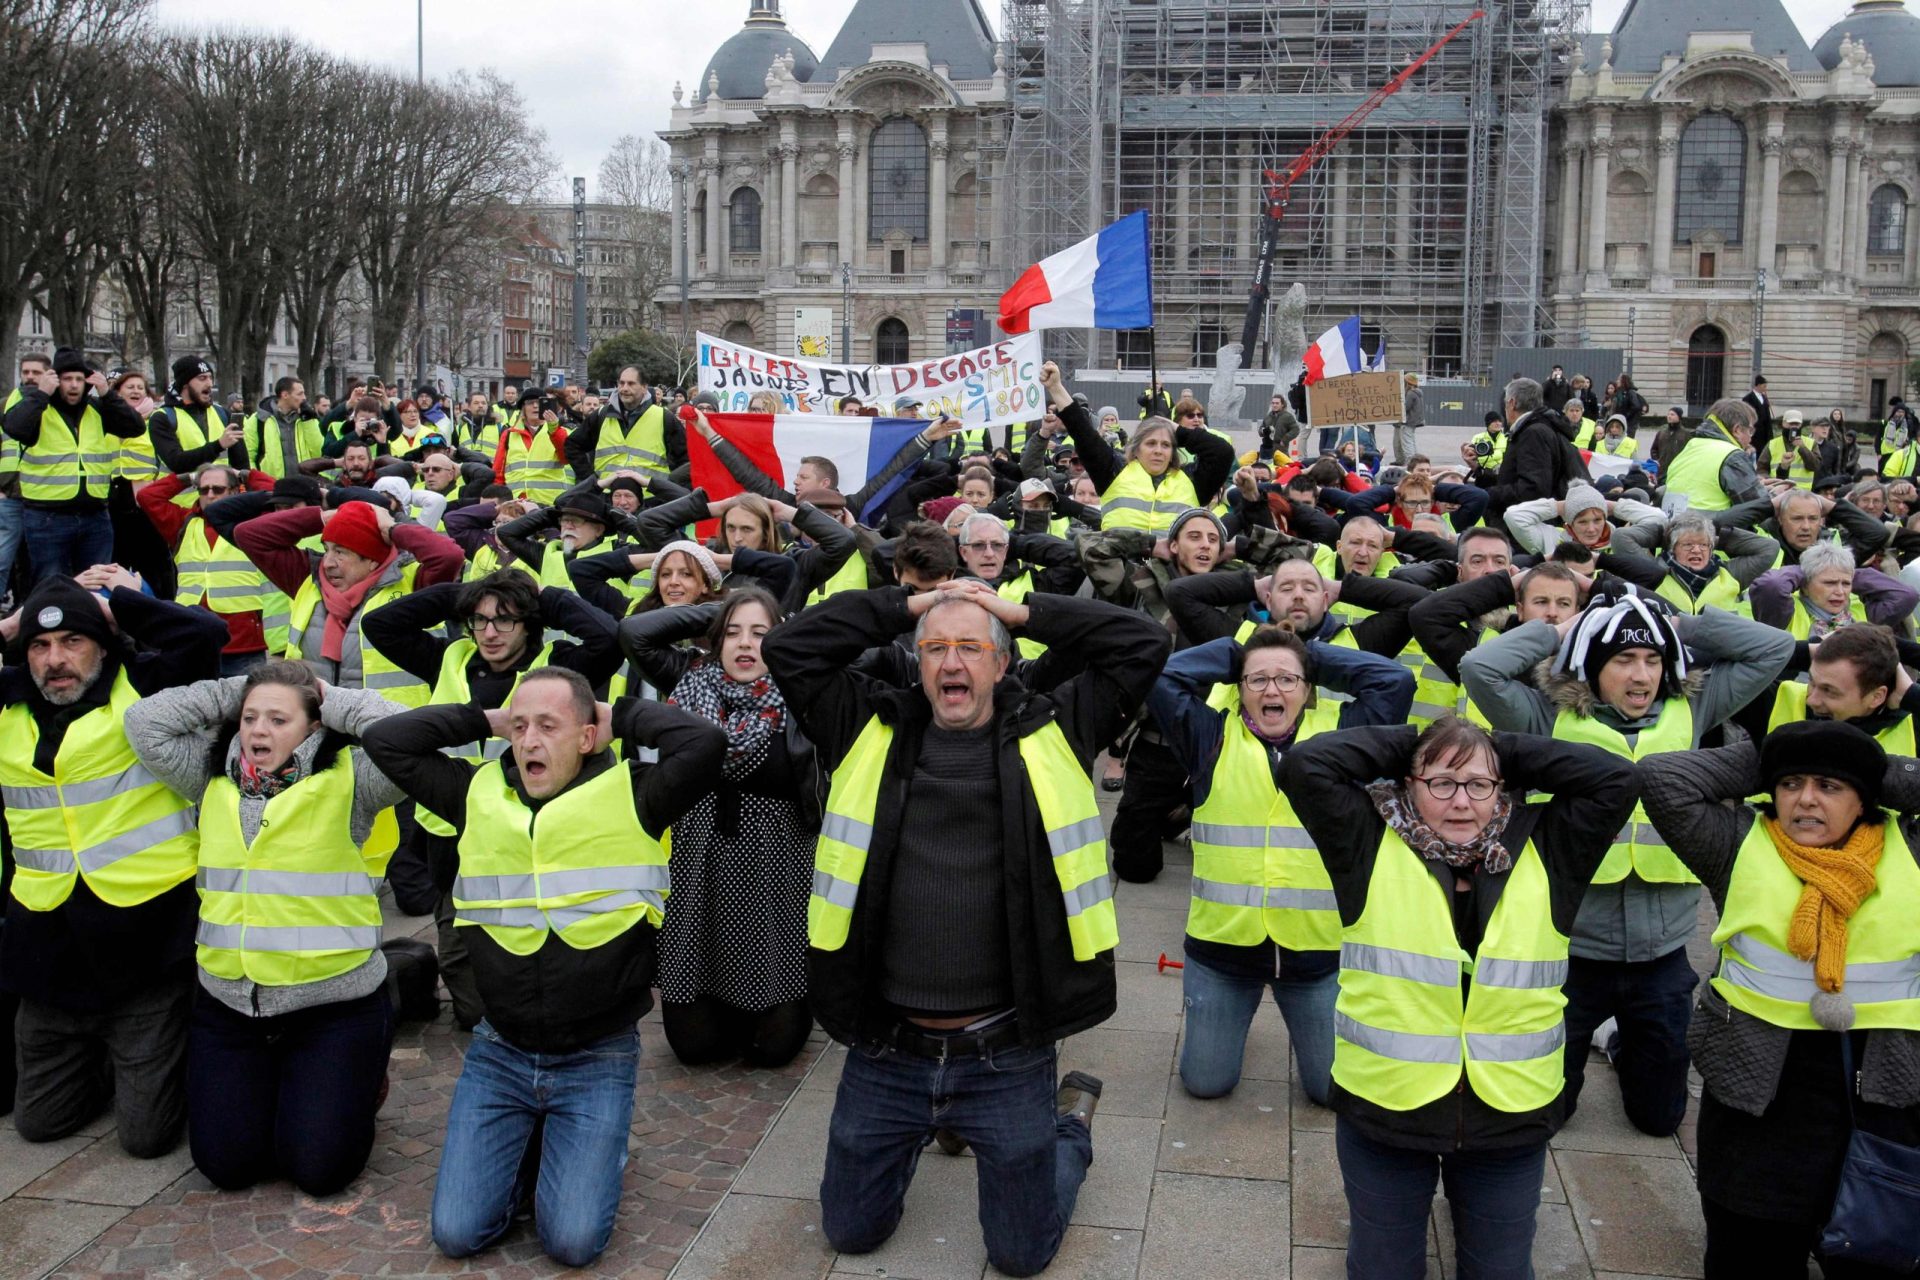 Separados por um vidro. A foto dos protestos em Paris que se tornou viral | FOTO